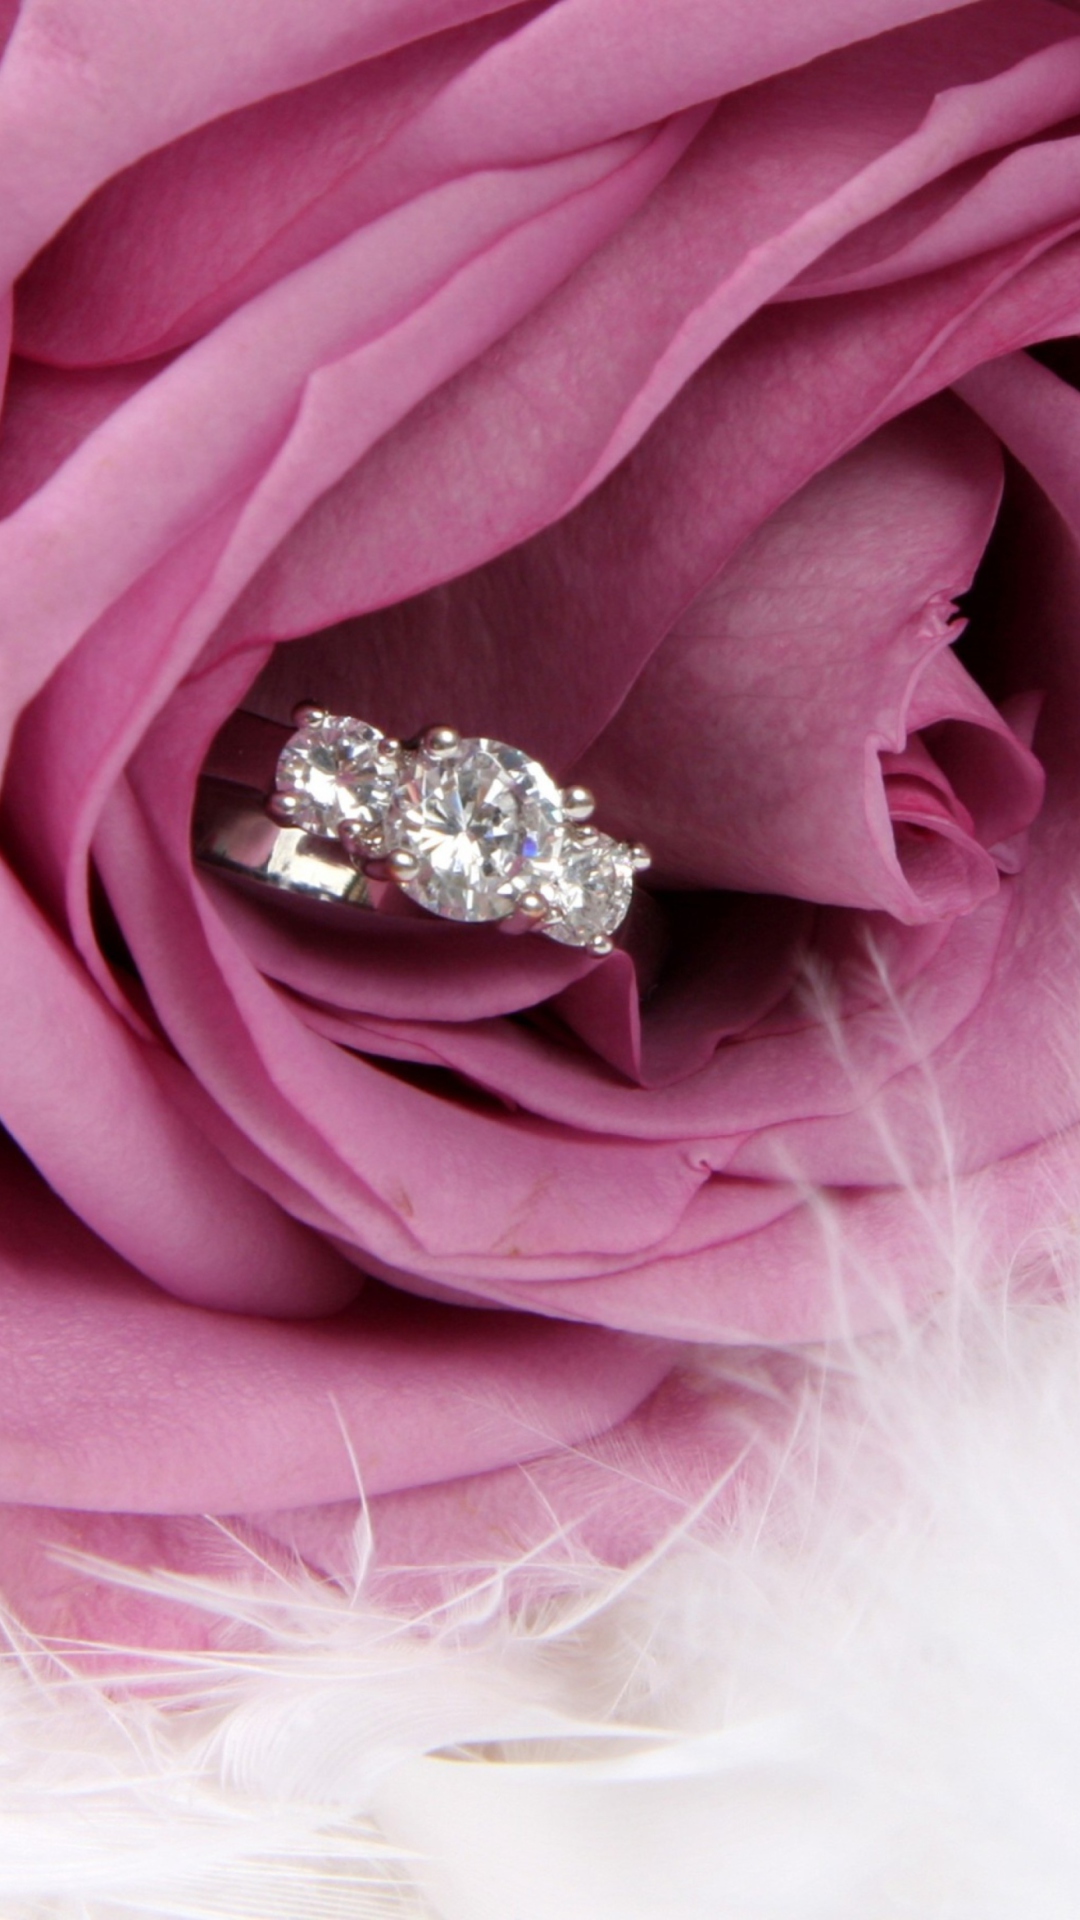 Engagement Ring In Pink Rose screenshot #1 1080x1920